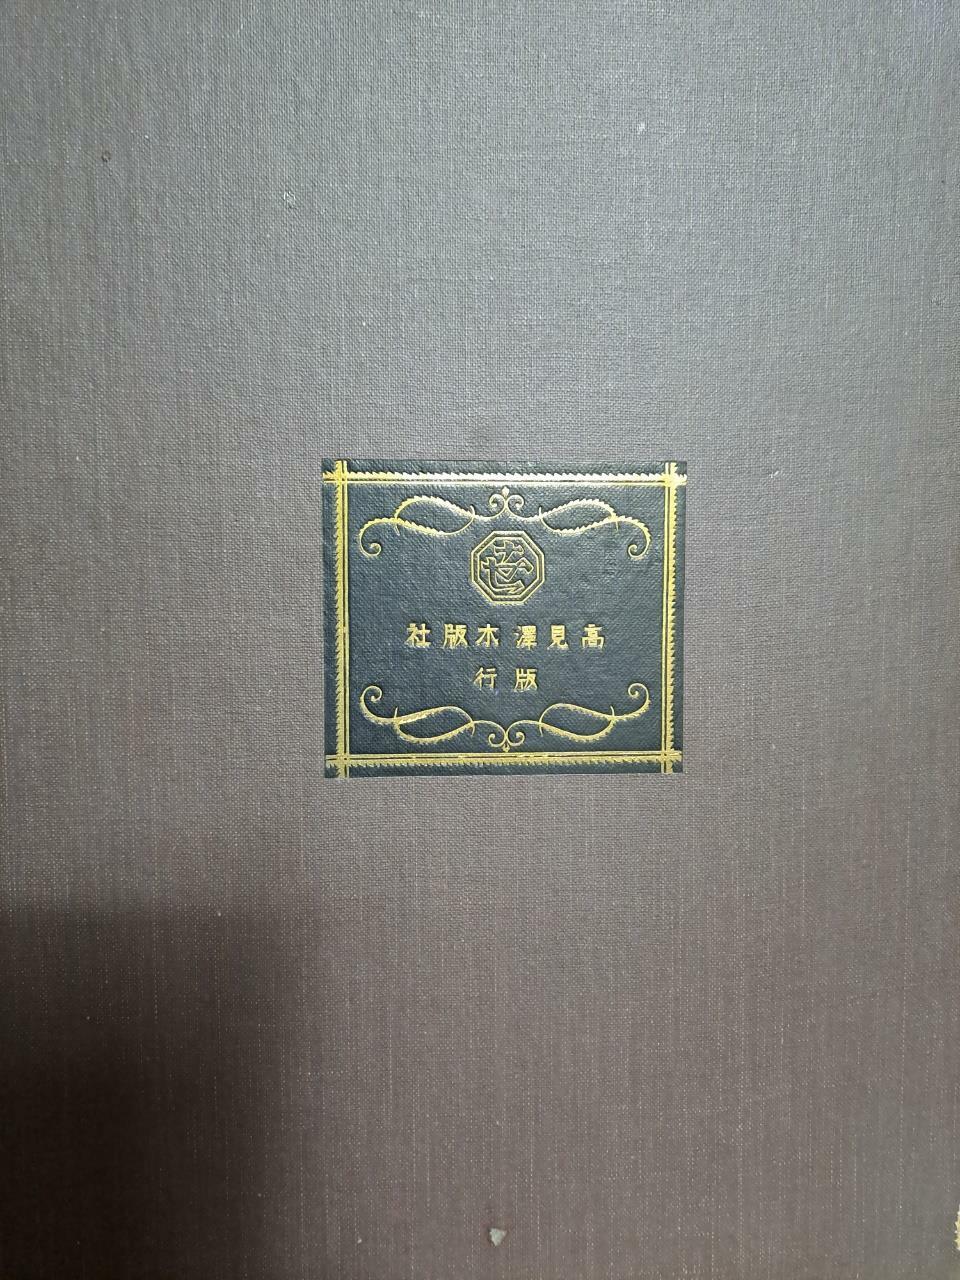 [중고] 일본나체미술전집 제3권(德川中期)-春信오리지날판화첨부(1931년발행)